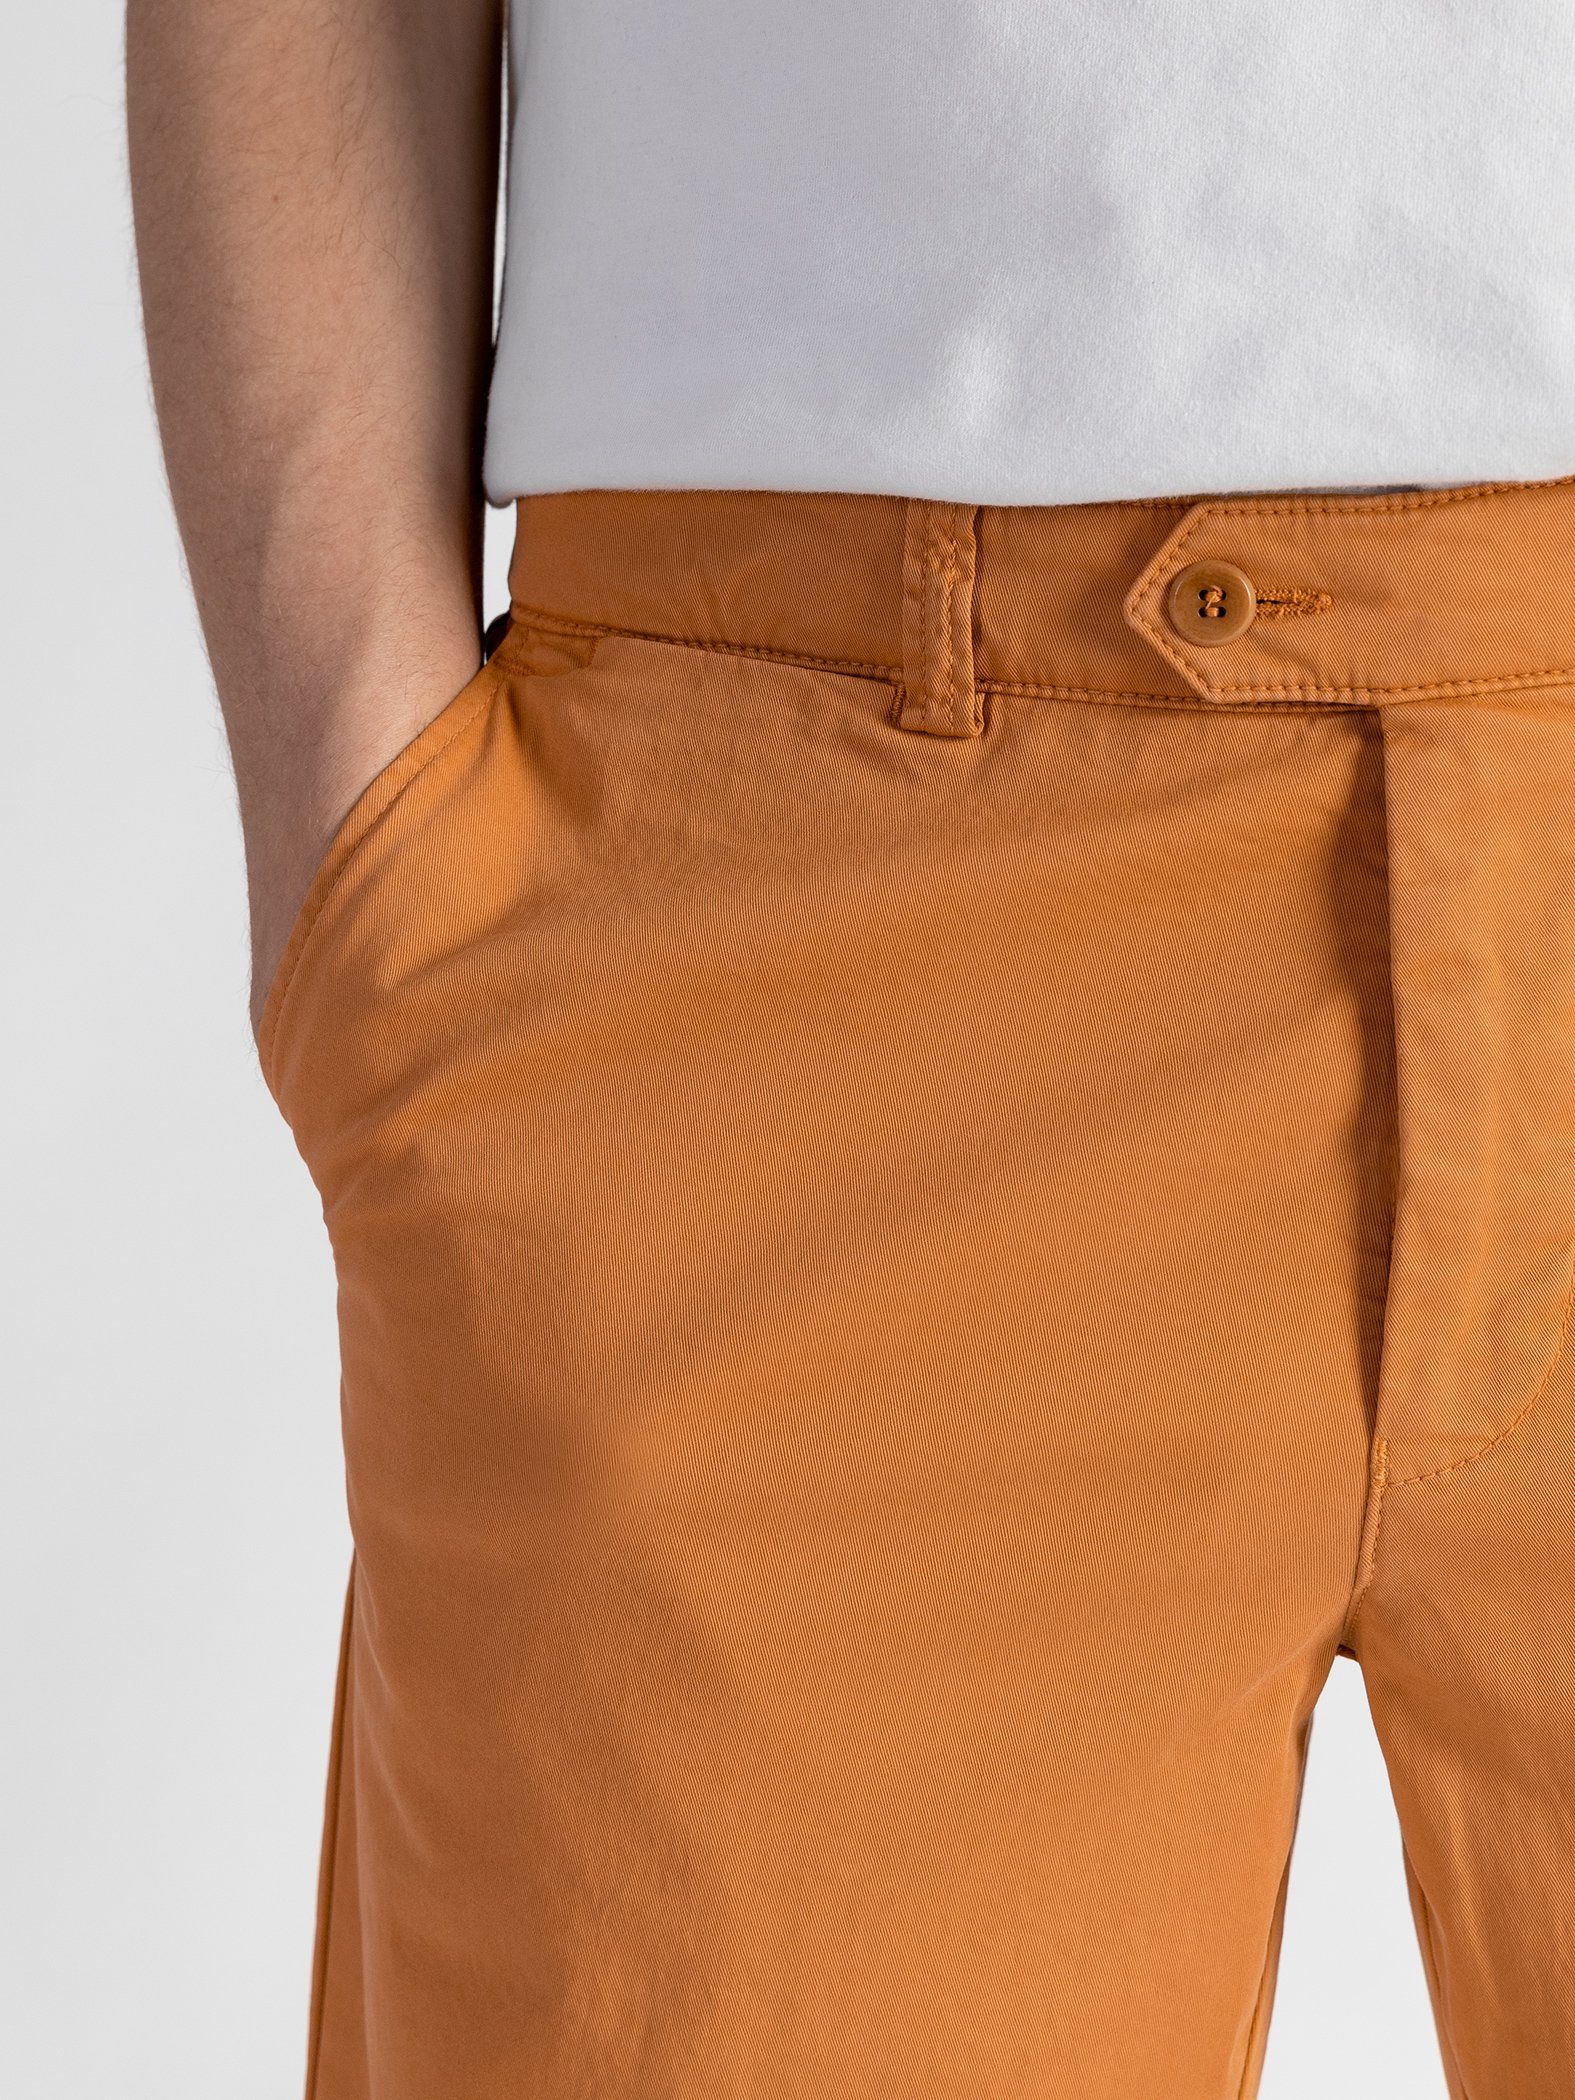 Bund, Shorts GOTS-zertifiziert Orange Farbauswahl, mit TwoMates elastischem Shorts